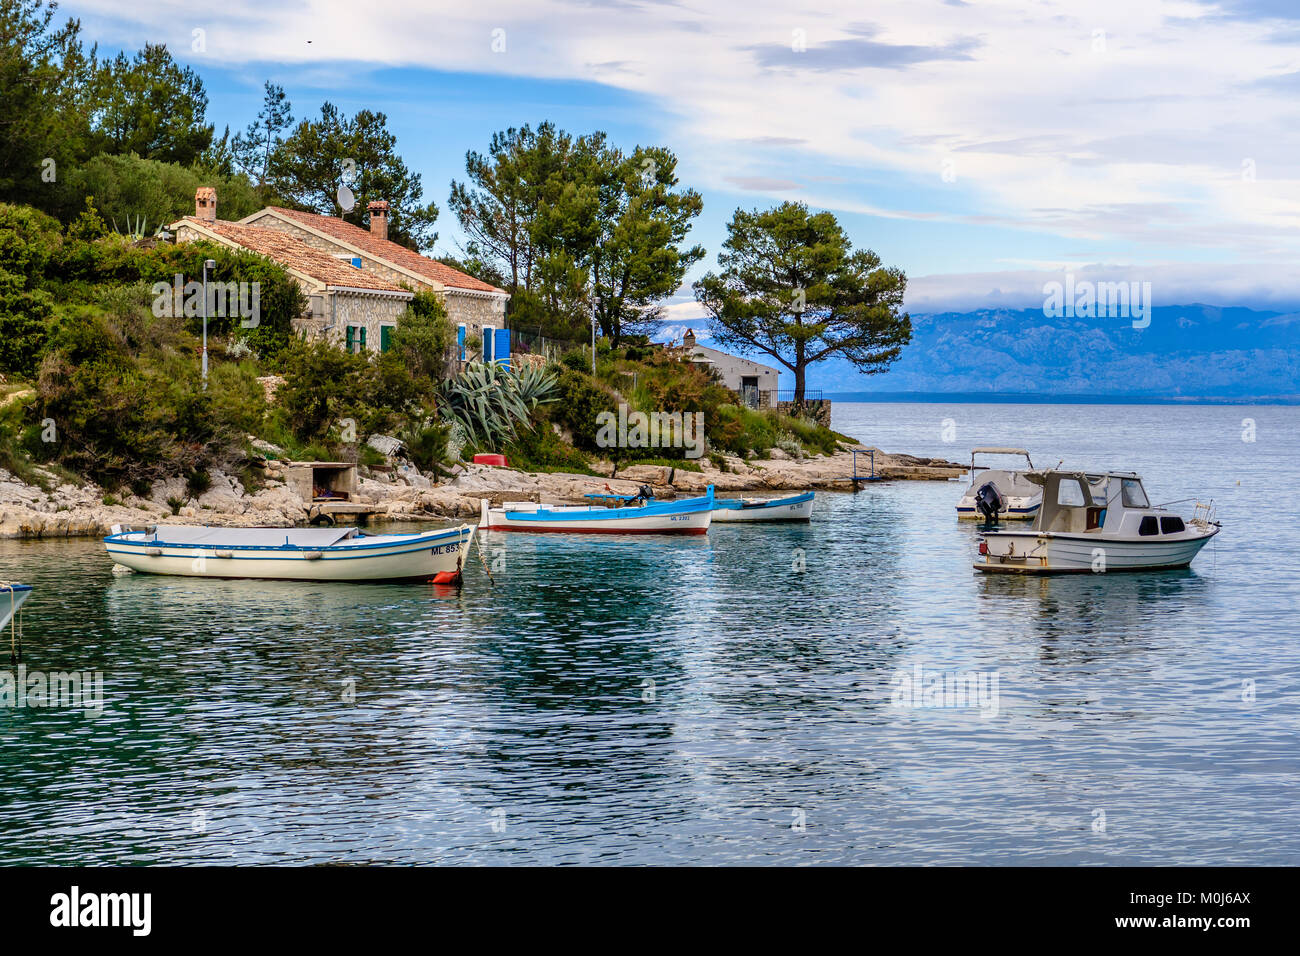 Case da parte del mare Adriatico vicino a Mali Losinj, sull'isola di Losinj, Croazia. Maggio 2017. Foto Stock